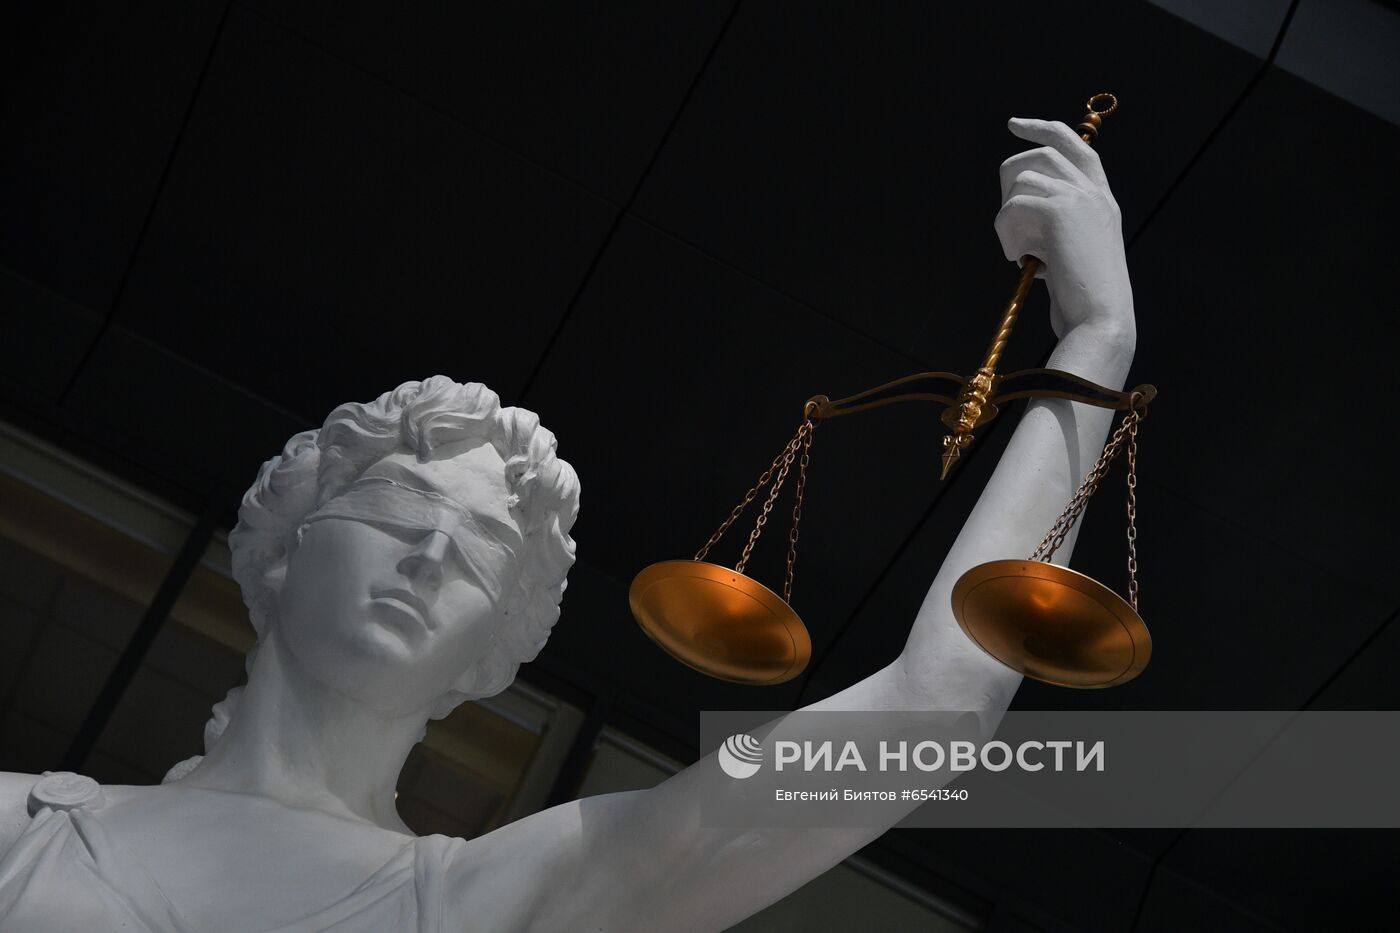 Первый апелляционный суд общей юрисдикции